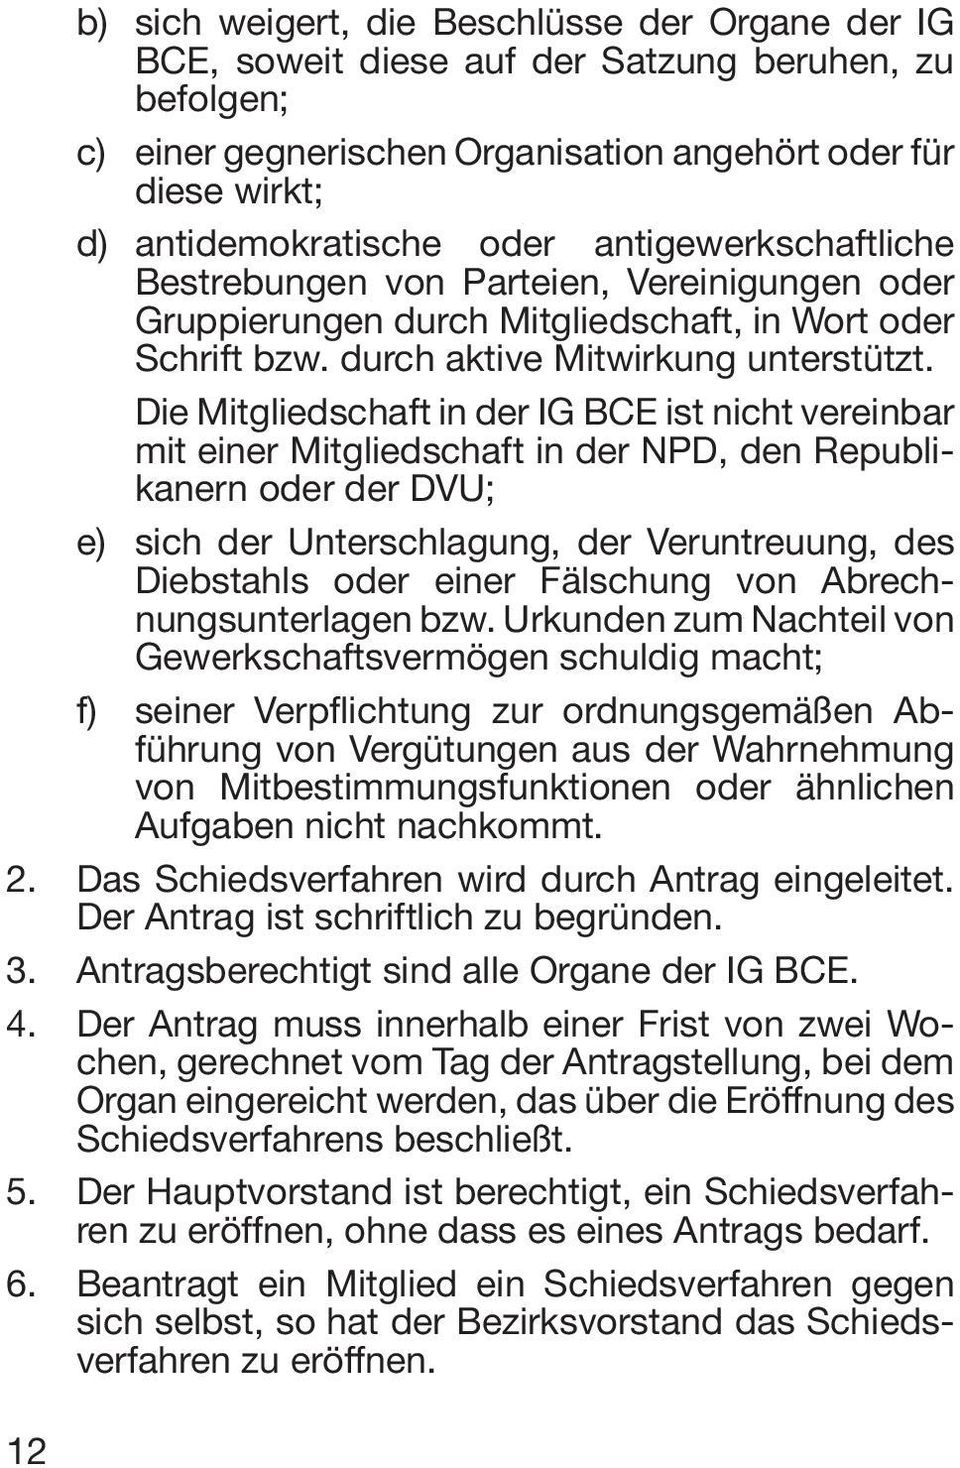 Die Mitgliedschaft in der IG BCE ist nicht vereinbar mit einer Mitgliedschaft in der NPD, den Republikanern oder der DVU; e) sich der Unterschlagung, der Veruntreuung, des Diebstahls oder einer